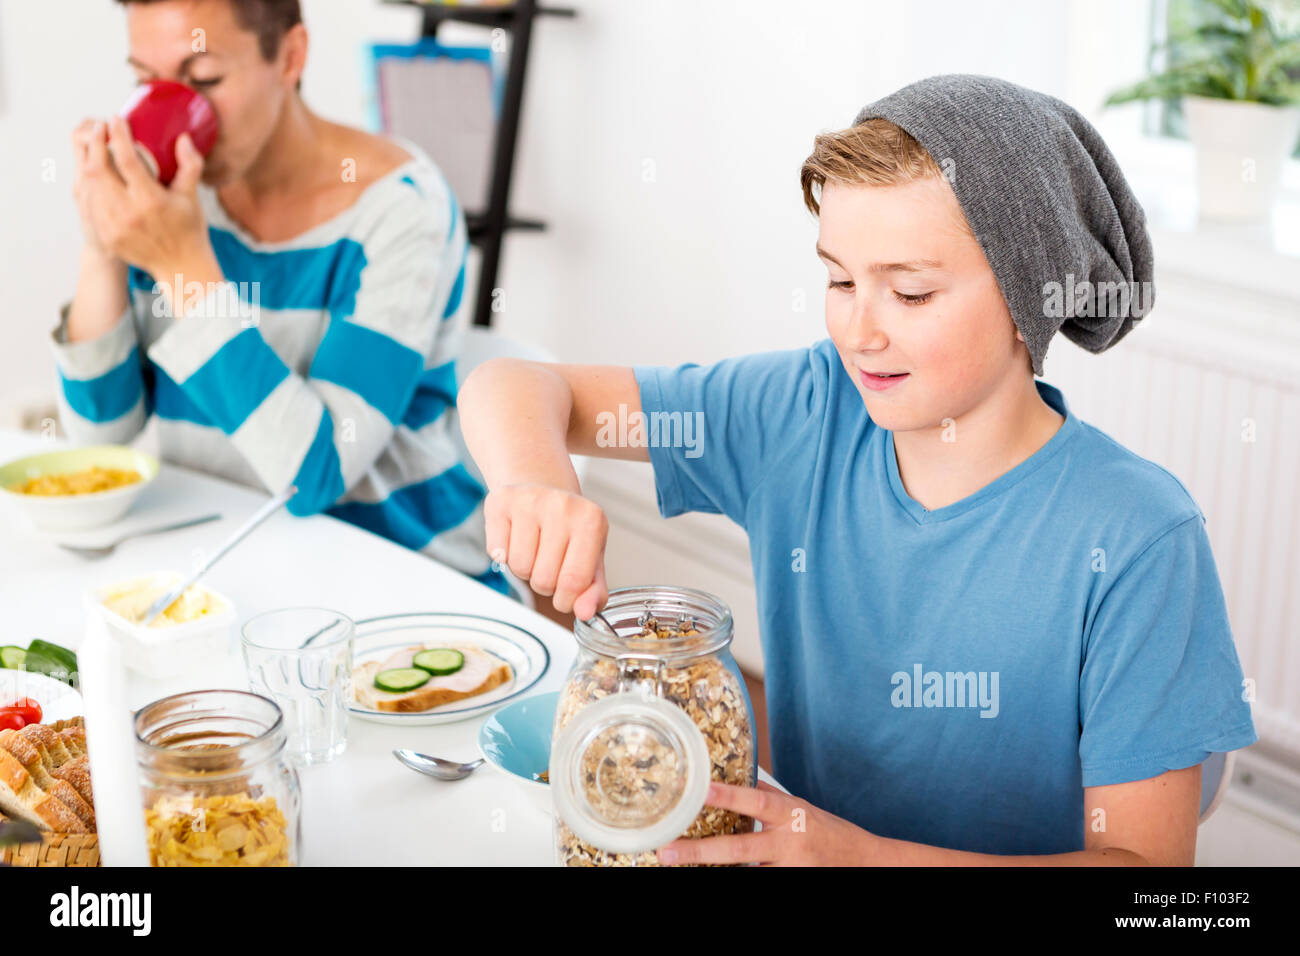 Mutter und Sohn zusammen mit Frühstück am Morgen. Sohn mit Getreide aus einer Flasche am Frühstückstisch. Stockfoto